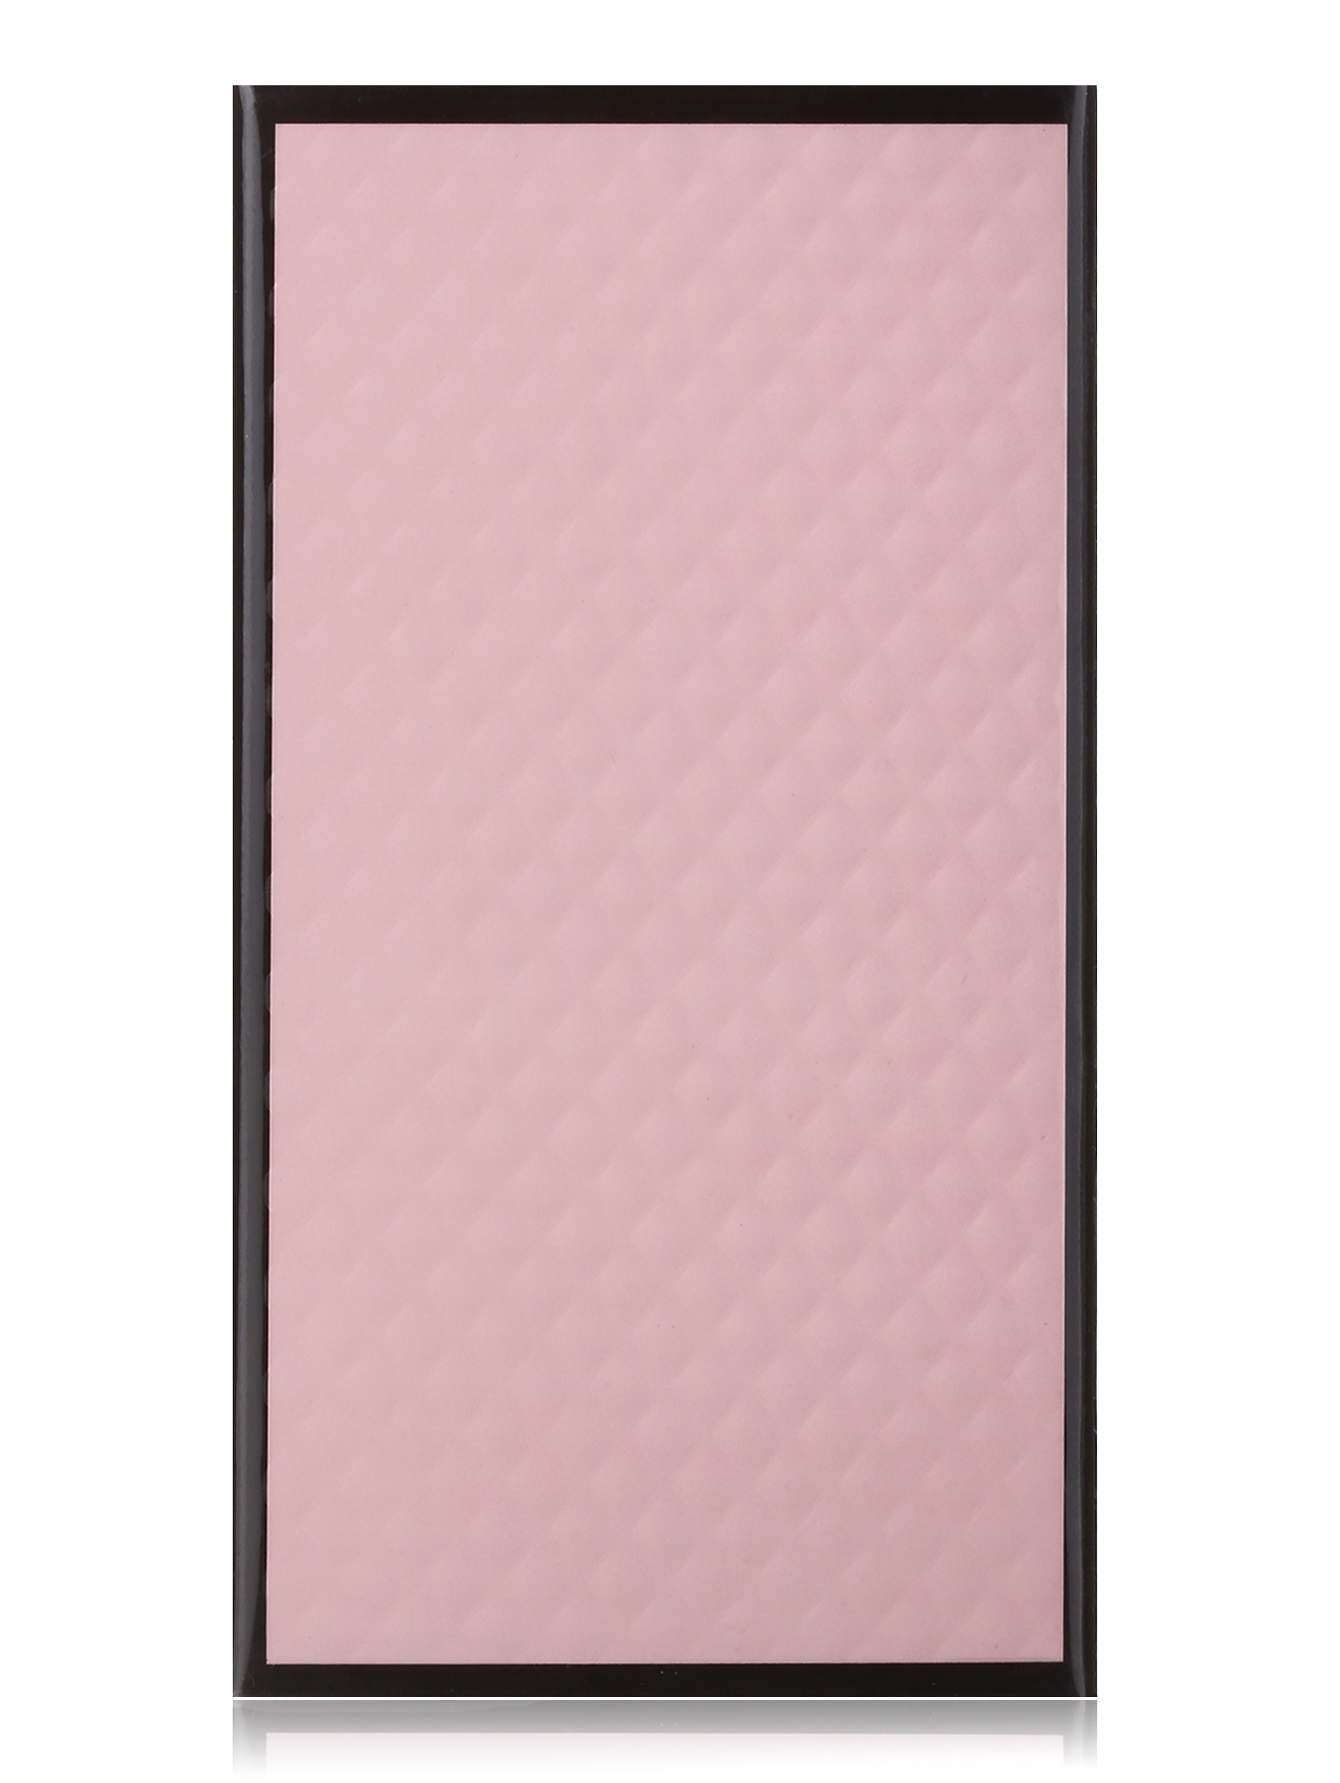  Парфюмерная вода - Fatale pink, 100ml - Модель Верх-Низ